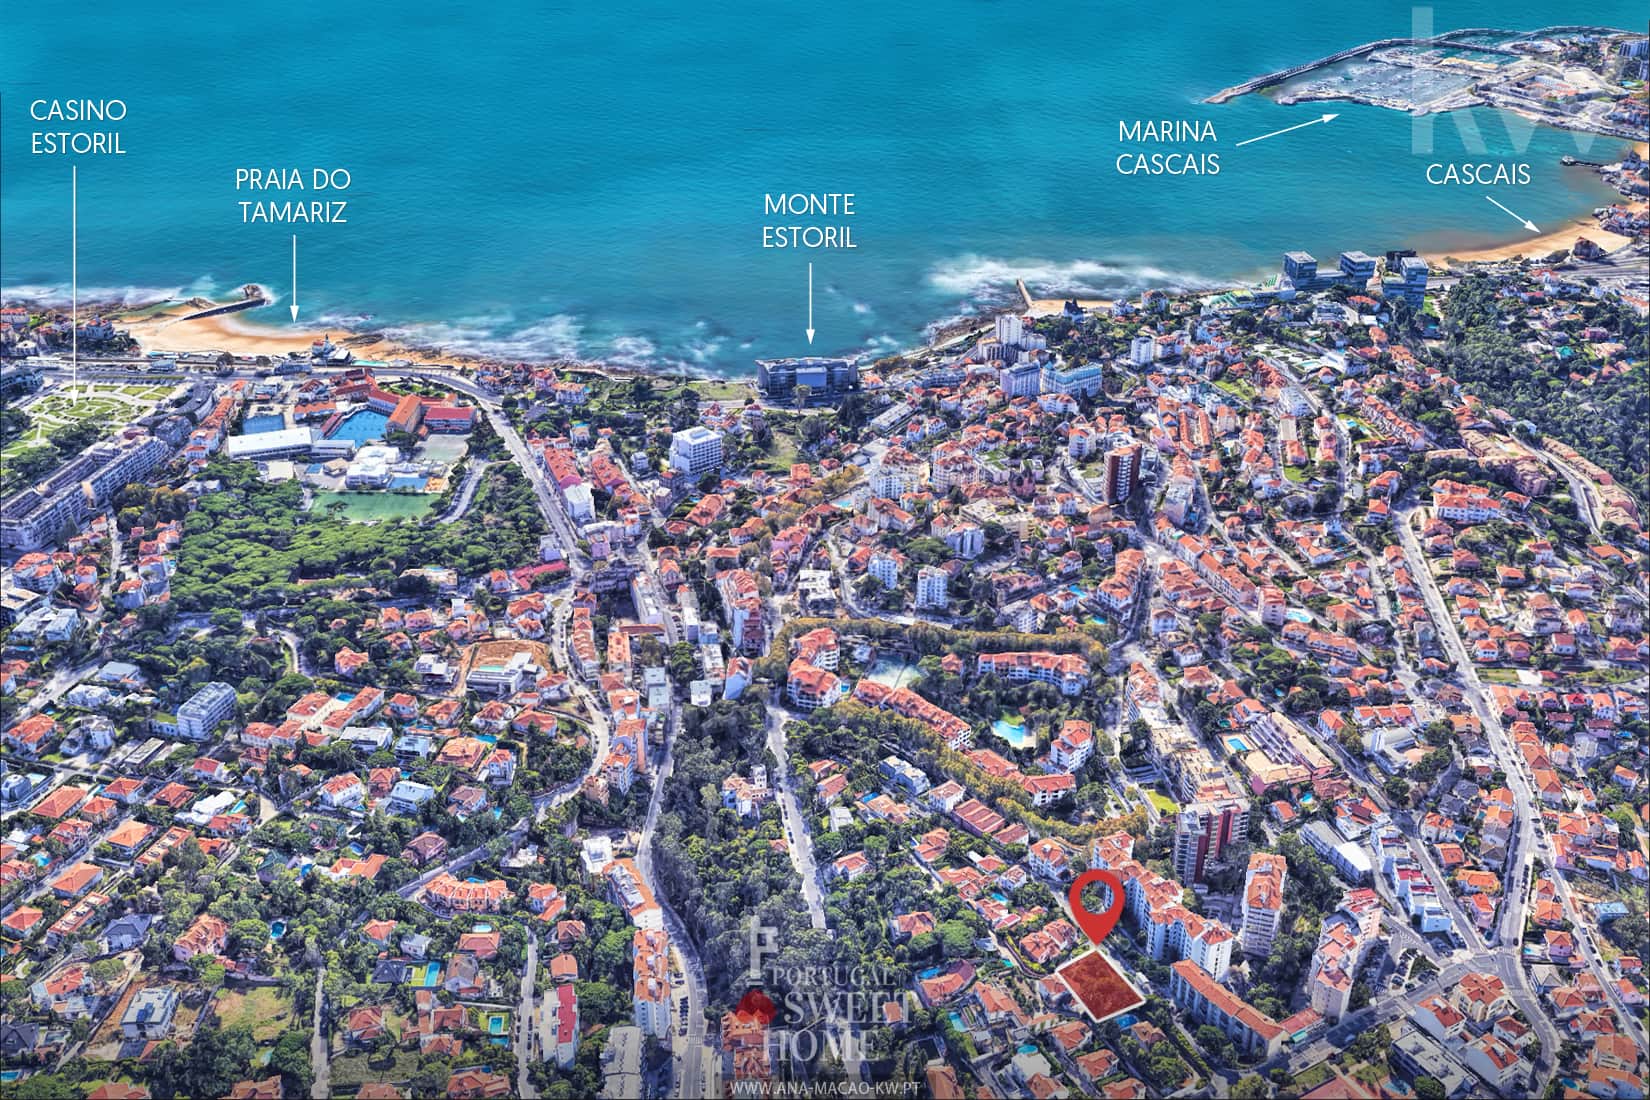 Aerial view and location of the condominium